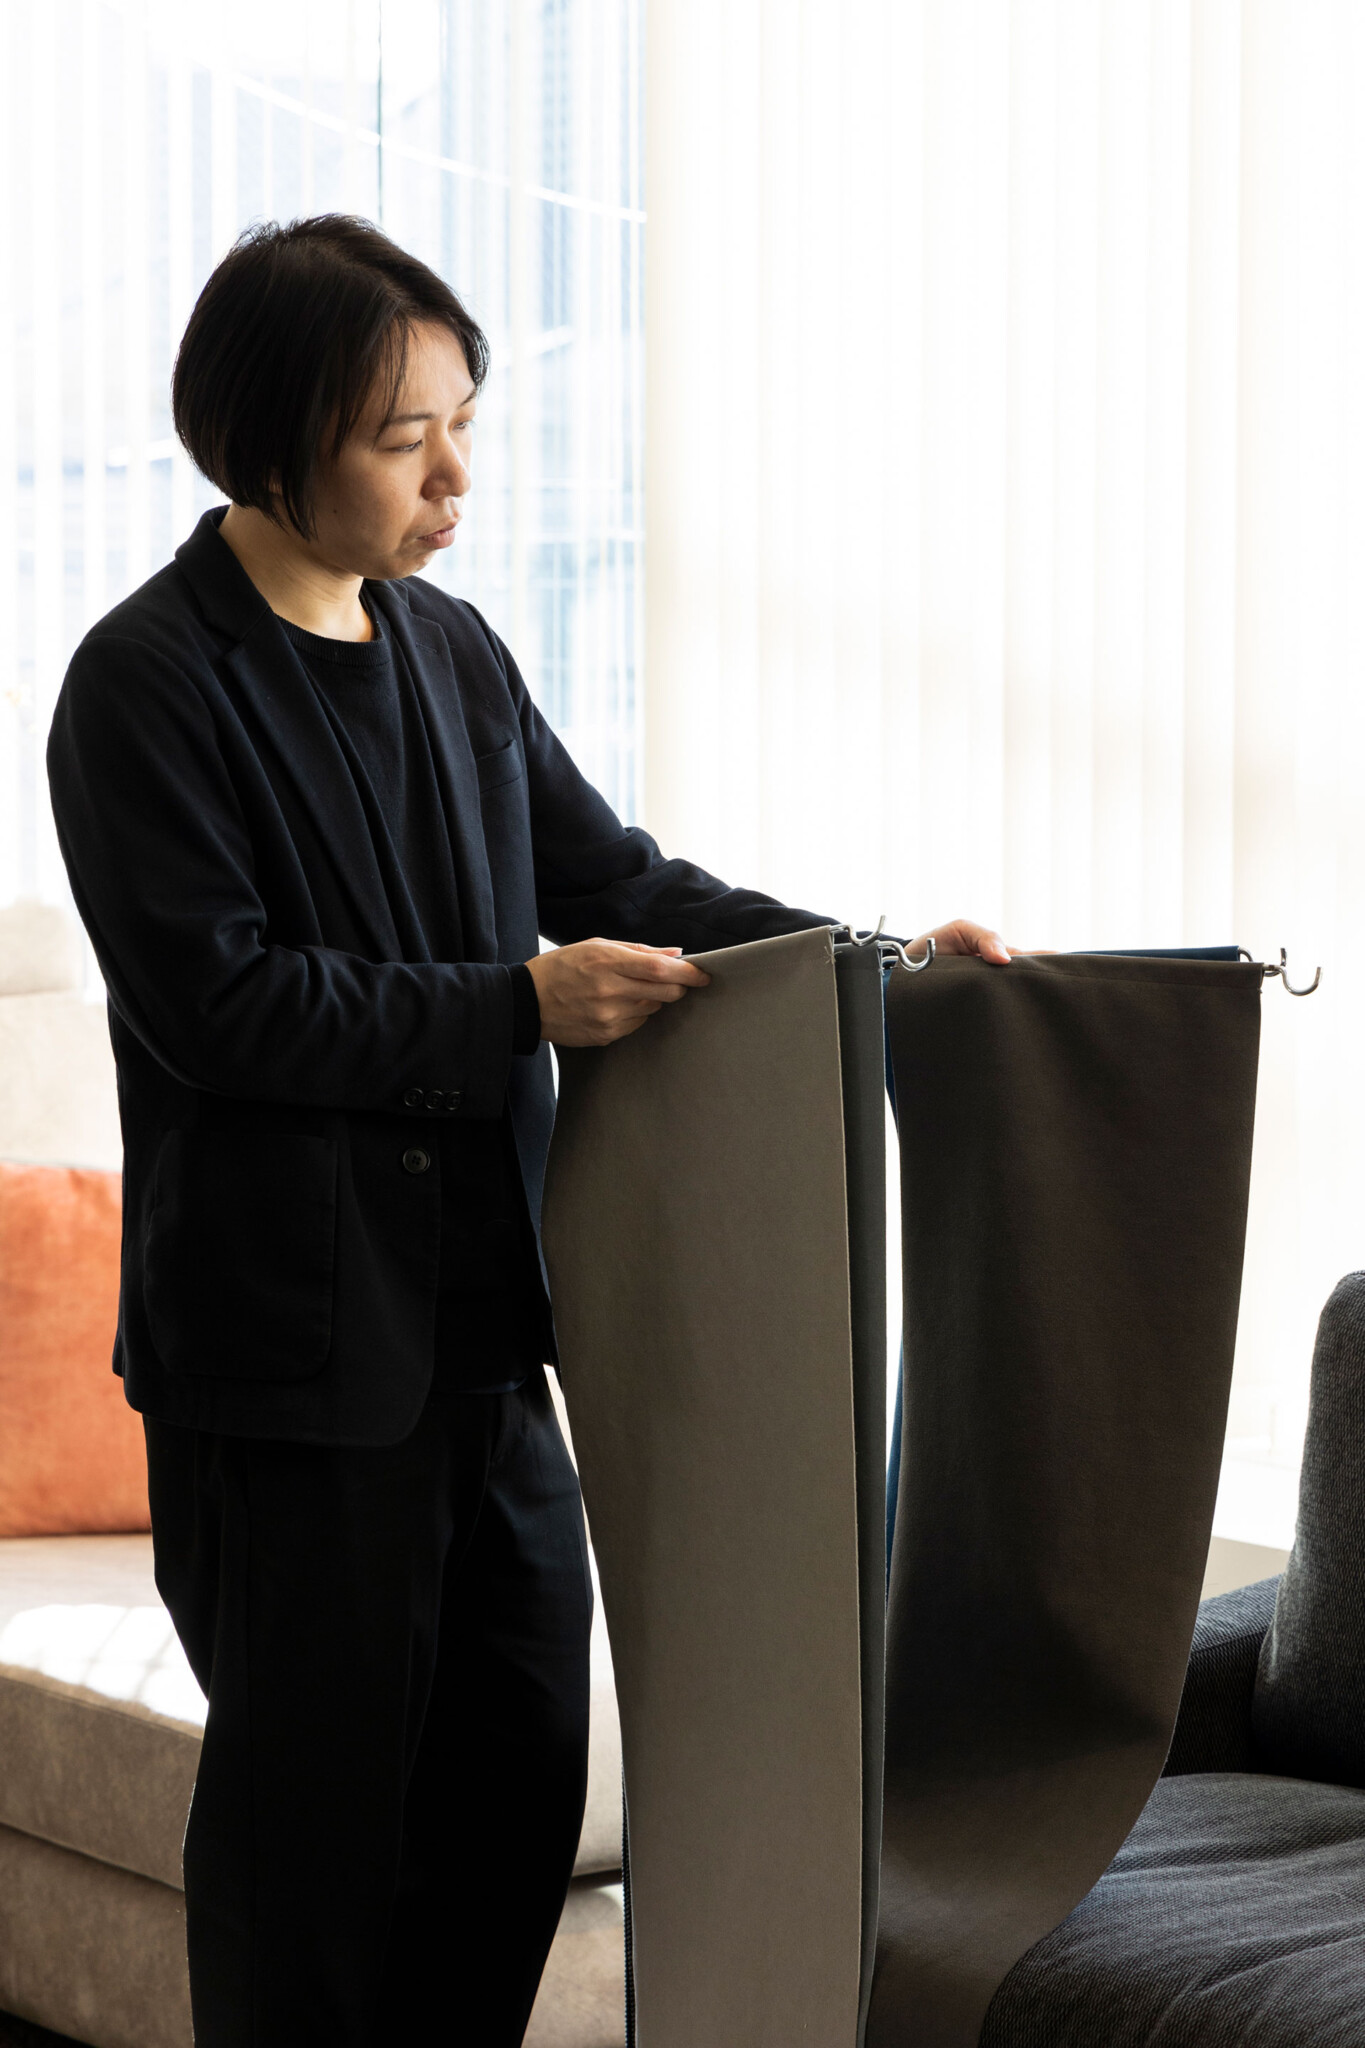 『FLANNEL SOFA』東京ショールーム副店長の宅見高志さん。「小さい生地サンプルをお配りしていますが、ショールームで大きなサンプルをソファに当てがって見るとイメージが湧きやすいと思います」